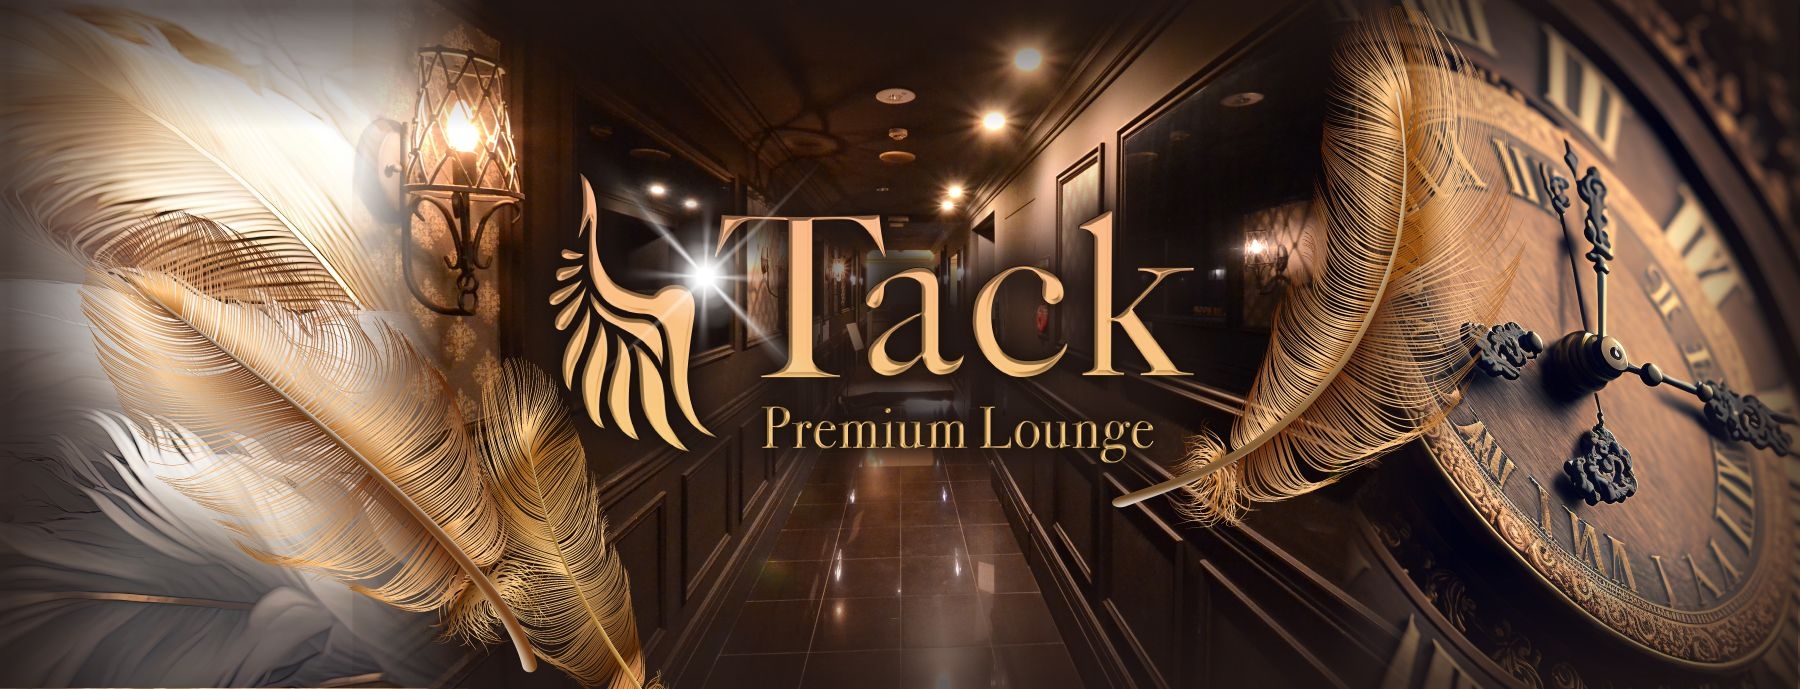 Premium Lounge Tack 〜タック～